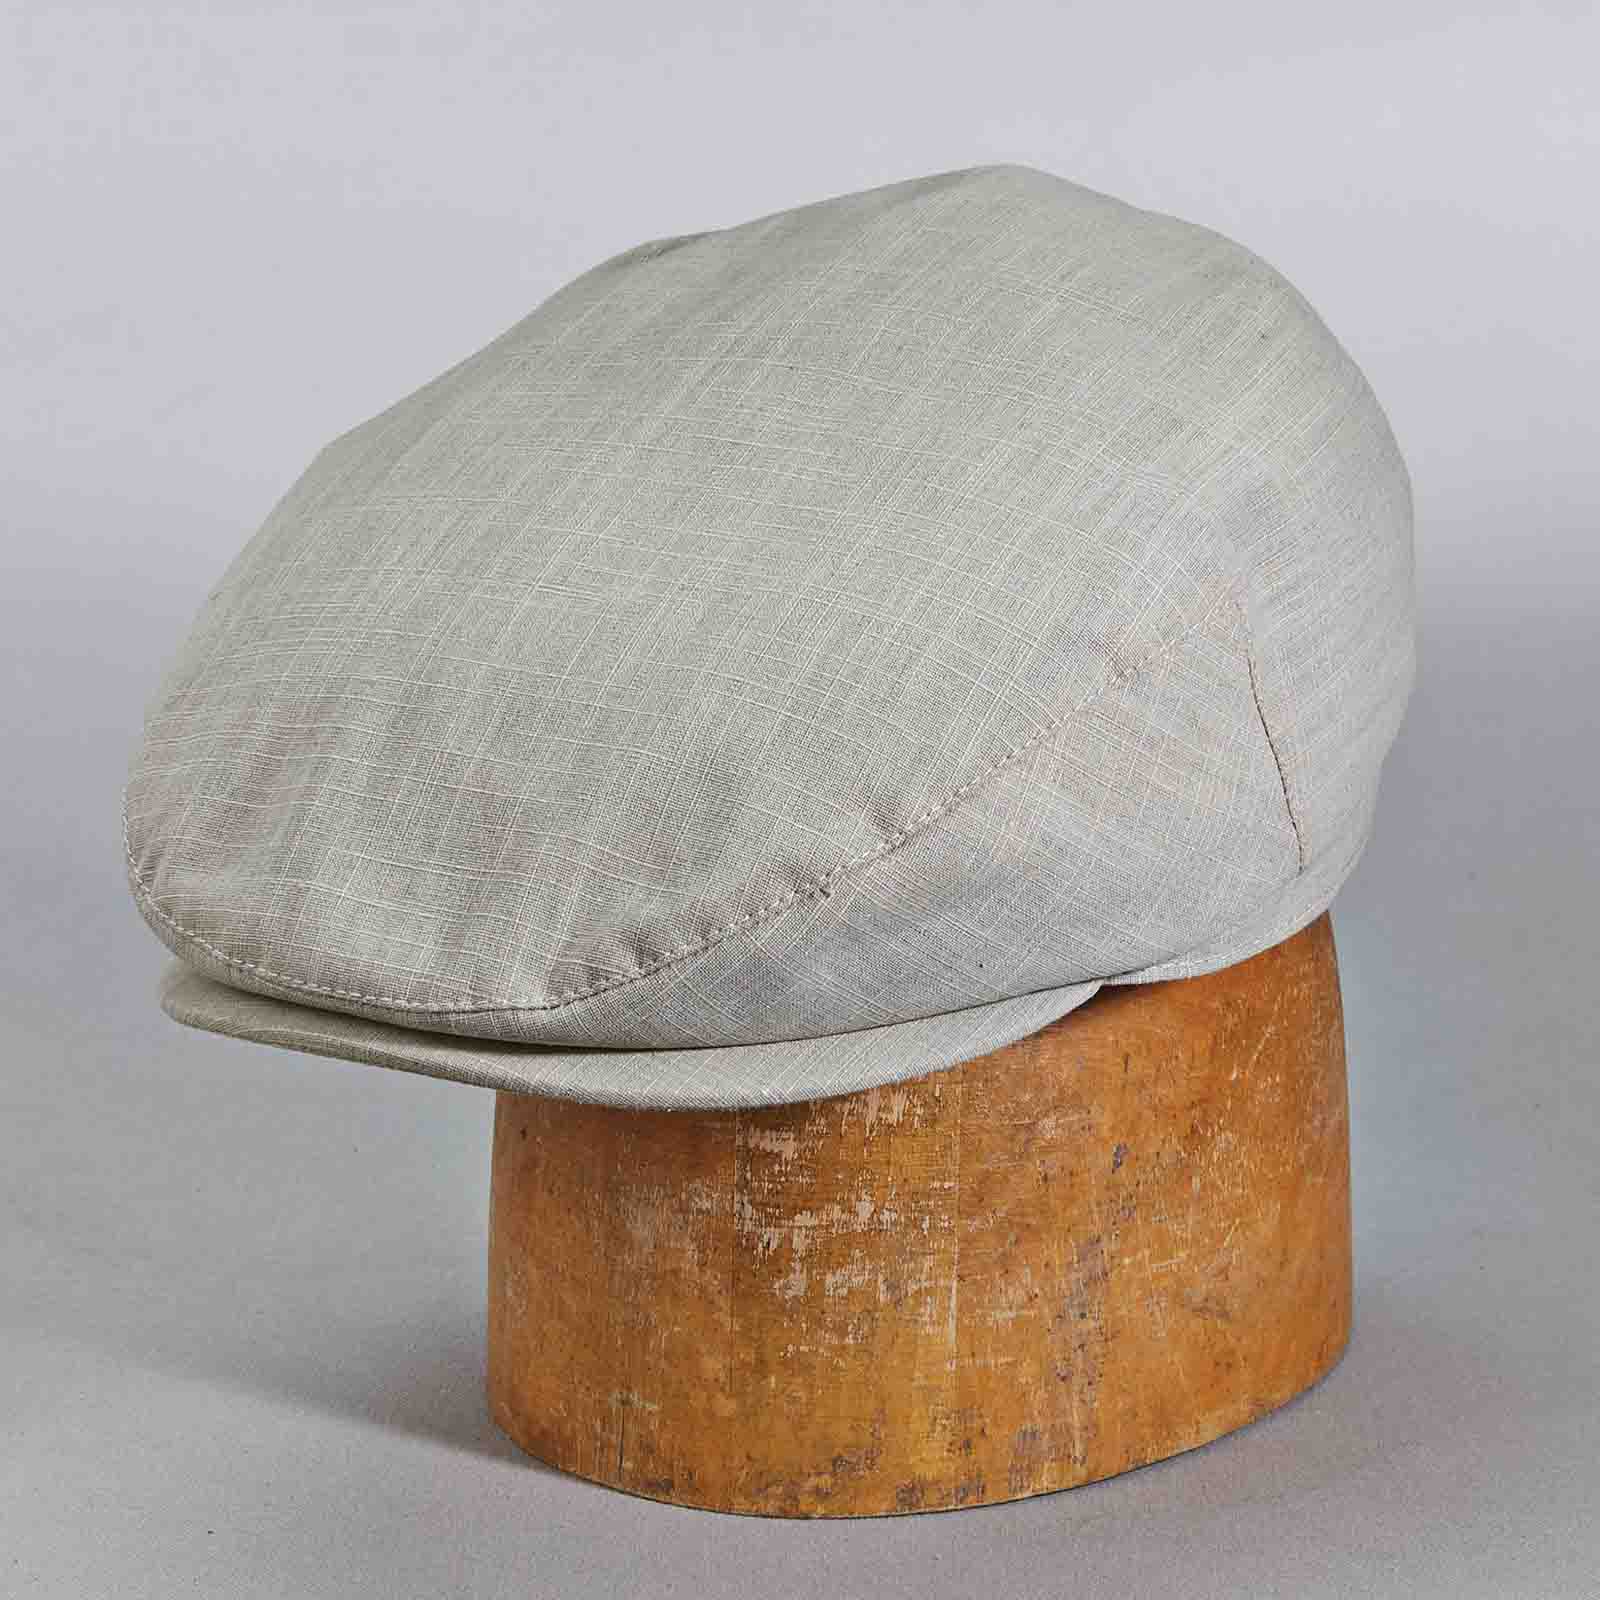 Stetson Hats Cotton Flat Driving Cap - Light Grey Flat Cap Stetson Hats    